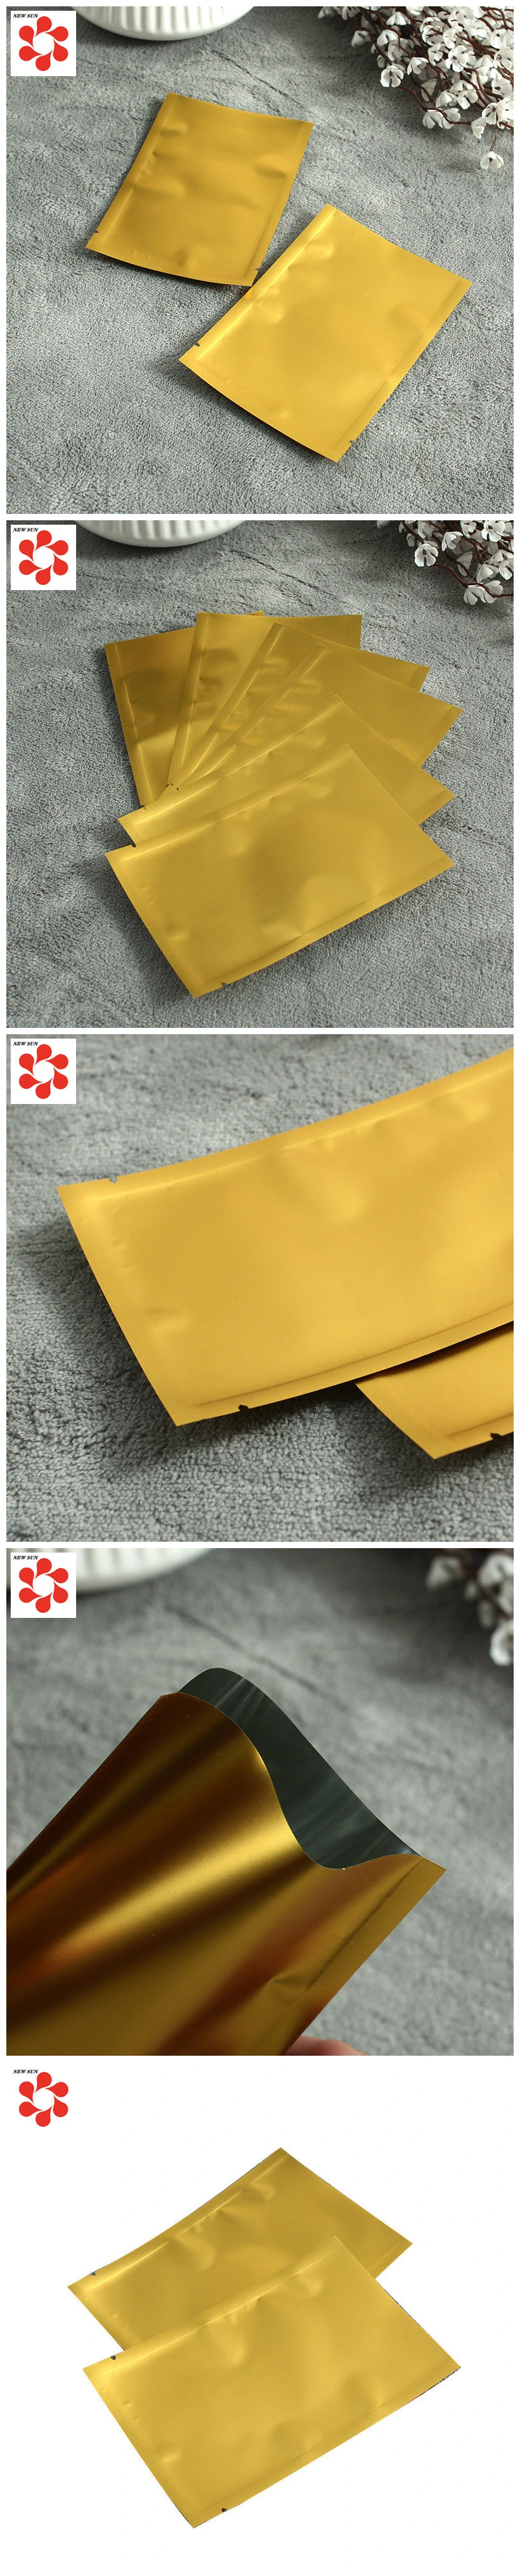 Custom Siver Golden Aluminum Foil Material Laminated Vacuum Packaging Bags for Dry Bean Rice Packaging